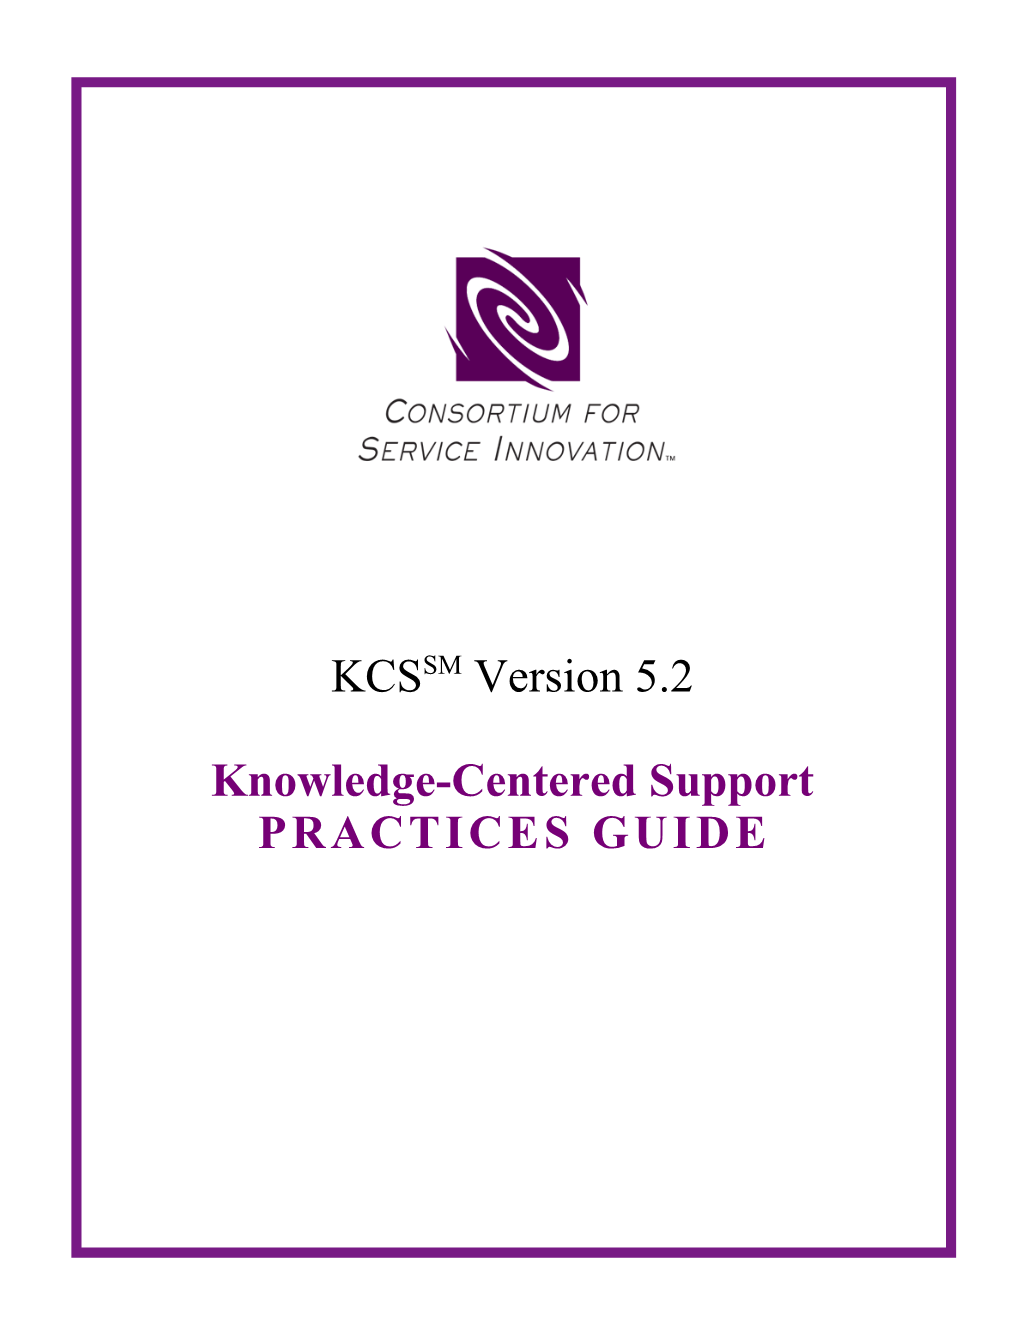 KCS Practices Guide Version 5.2